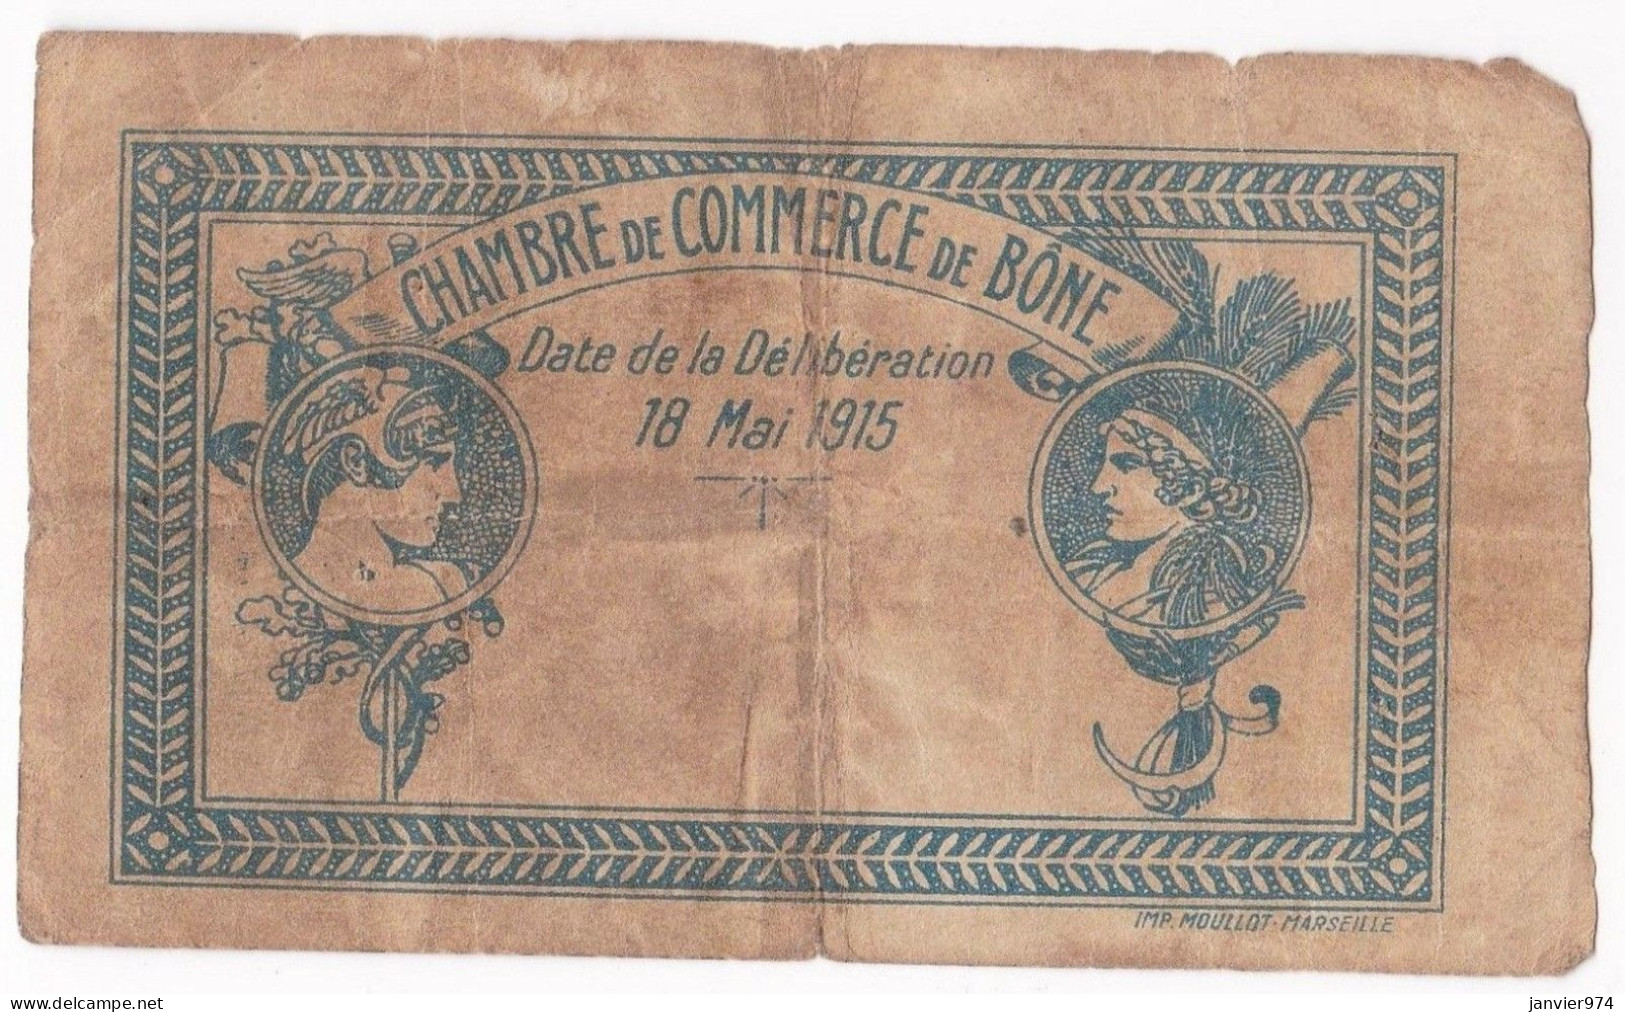 Algerie BONE . Chambre De Commerce . 1 Franc 18 Mai 1915 Serie D N° 64447, Billet Colonial Circulé - Algérie